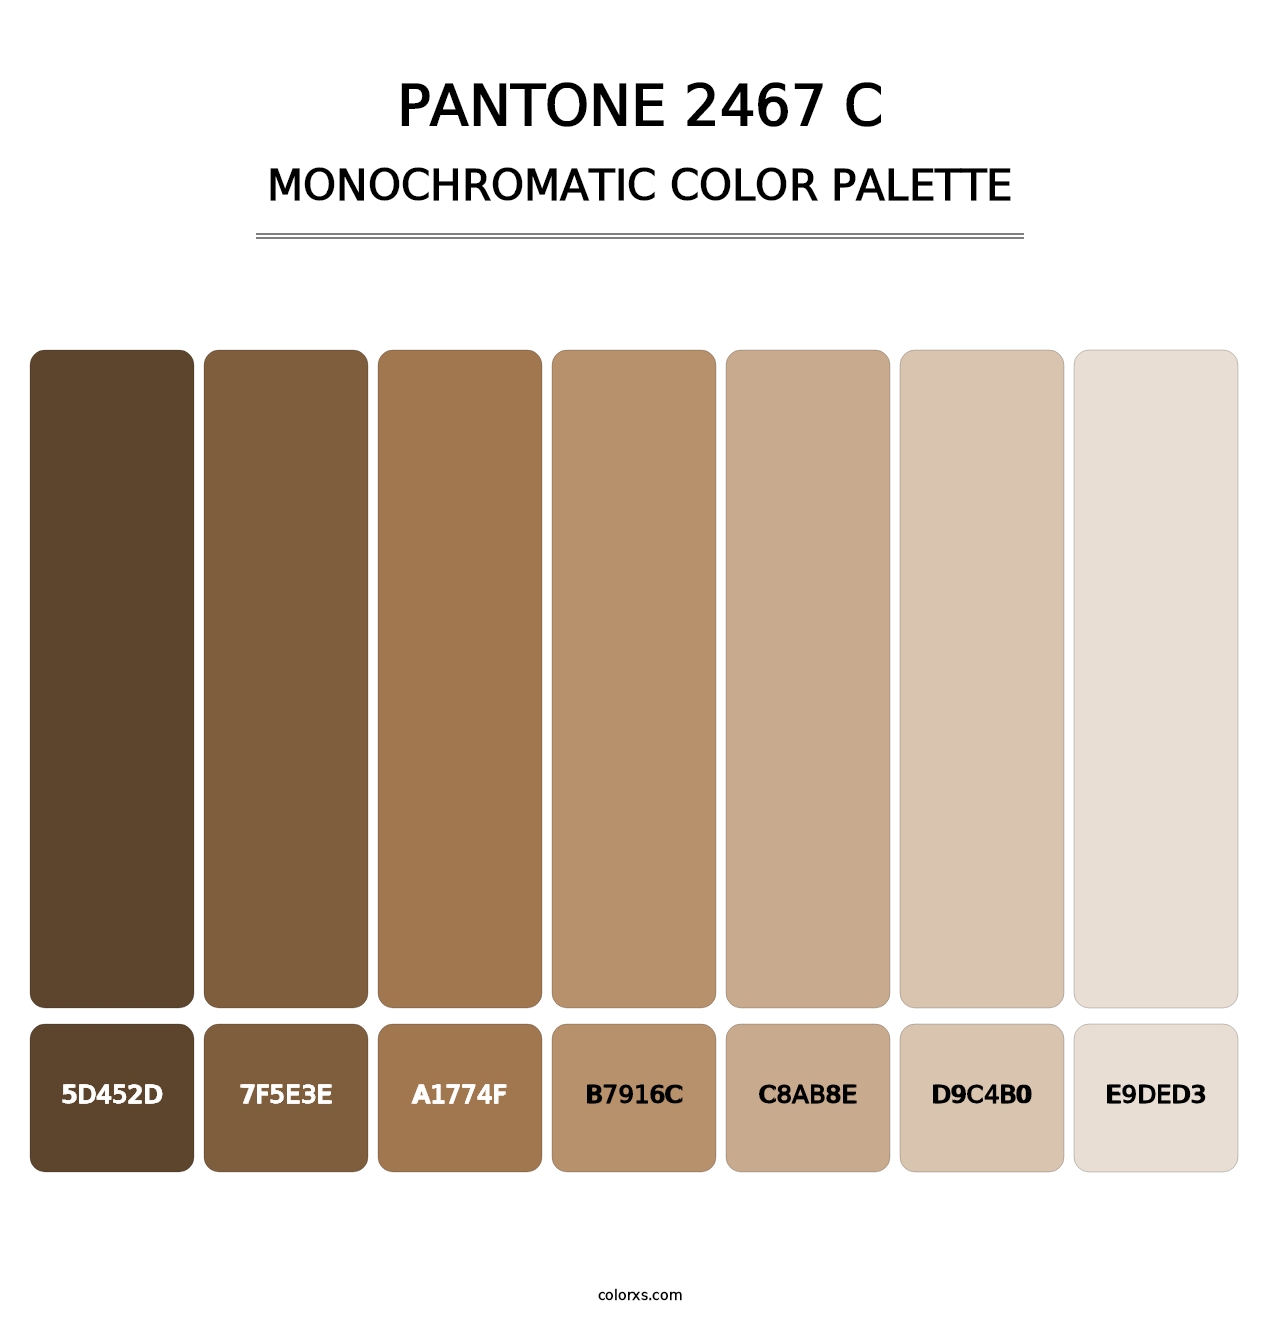 PANTONE 2467 C - Monochromatic Color Palette